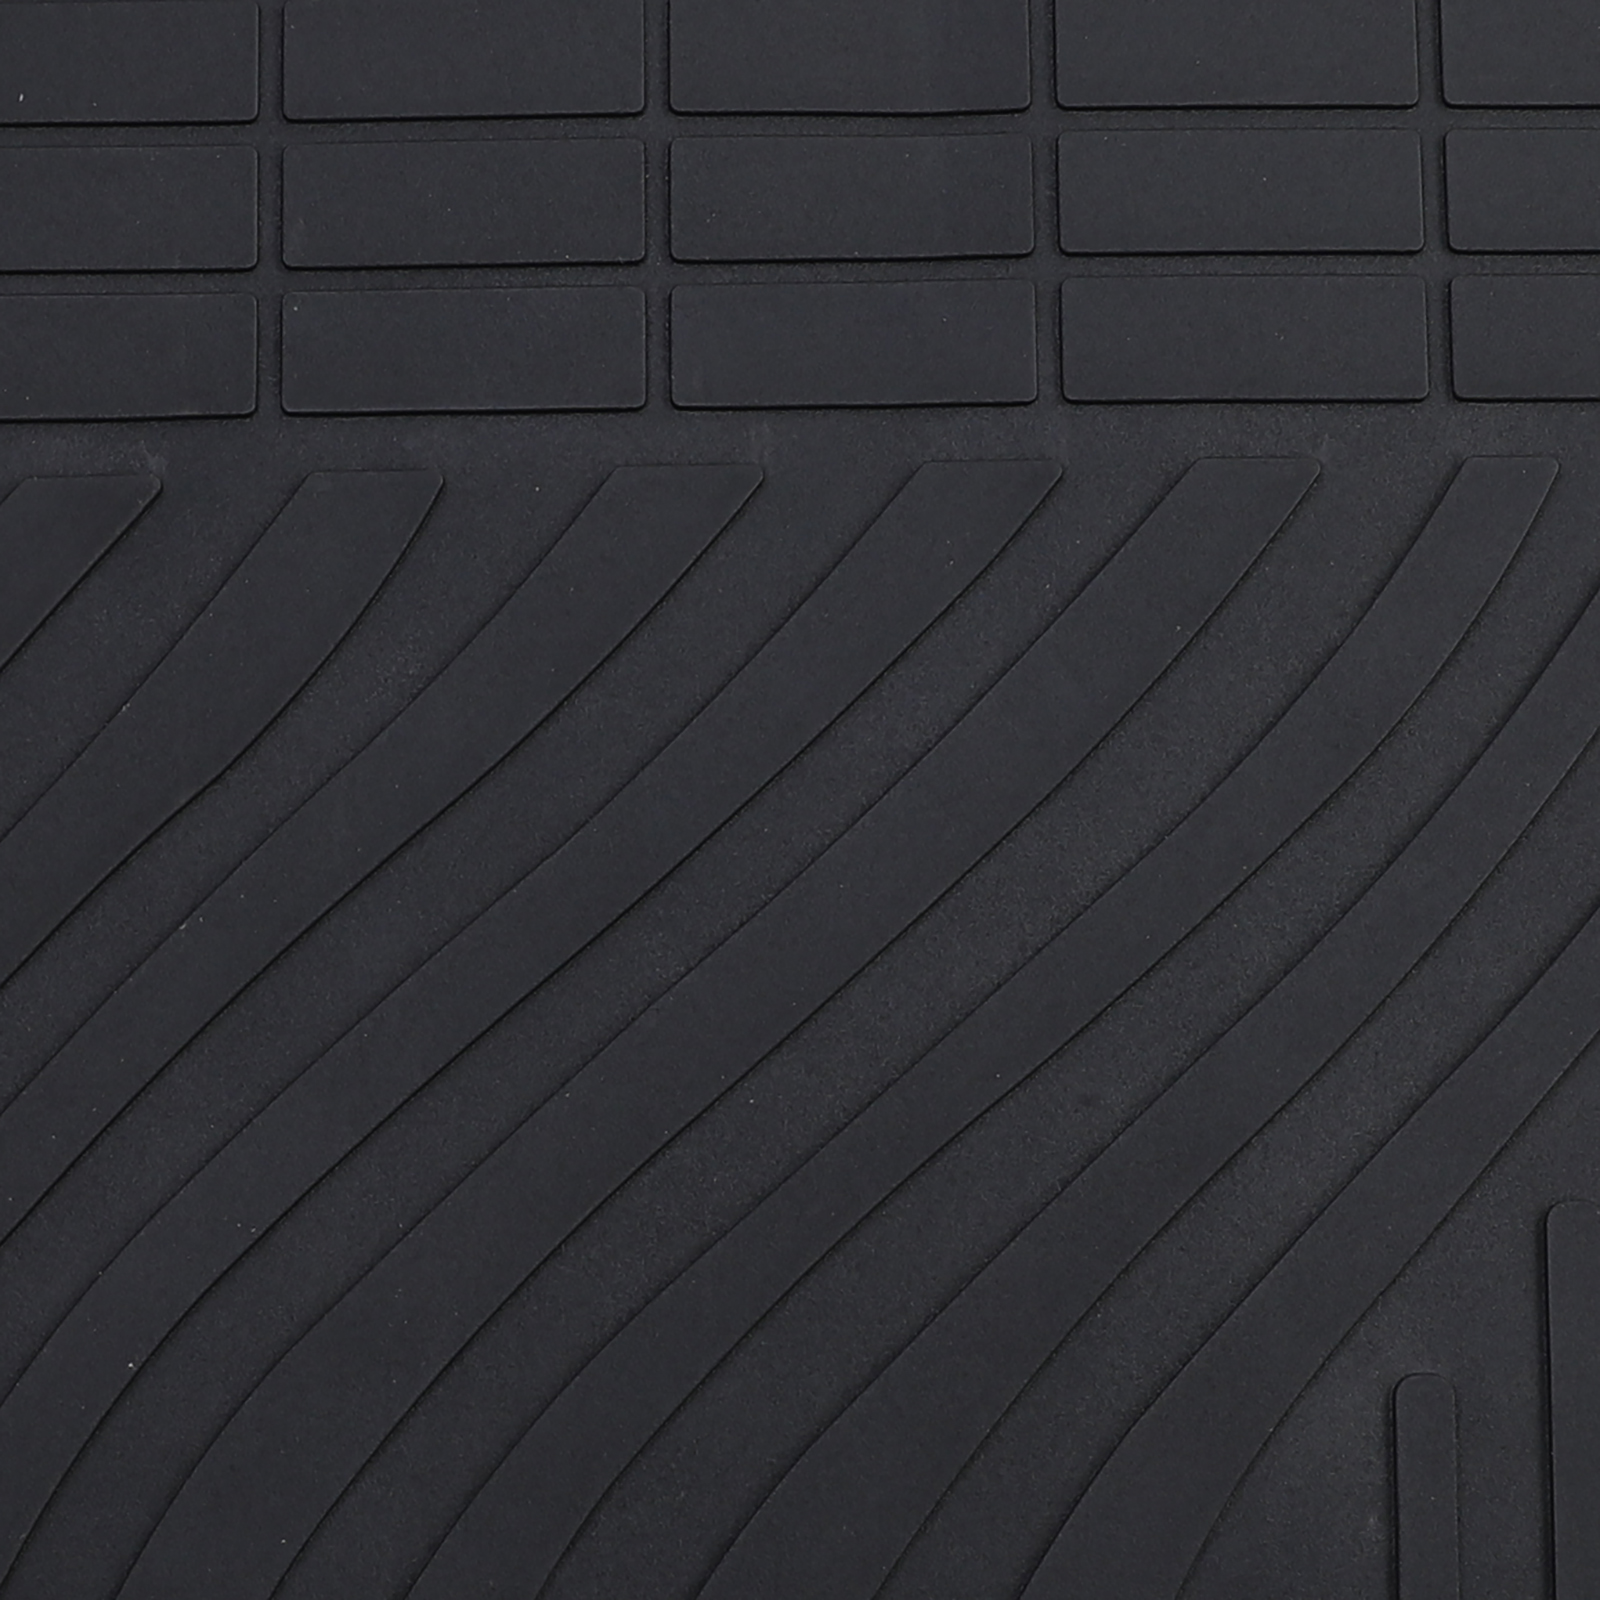 kfz-premiumteile24 KFZ-Ersatzteile und Fußmatten Shop, Waben Gummimatten  passend für Ford Focus MK3 2010-2018 Fußmatten Auto Allwetter Matten  4-teilig schwarz